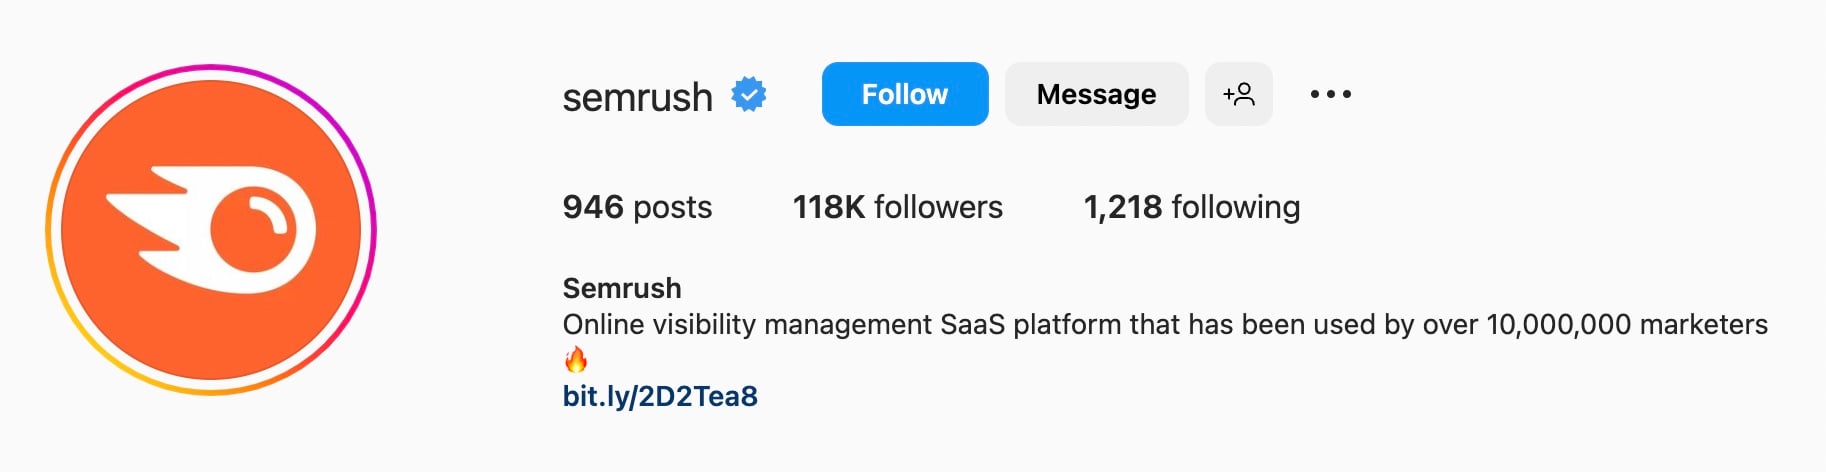 Instagram bio ideas for SaaS businesses, semrush